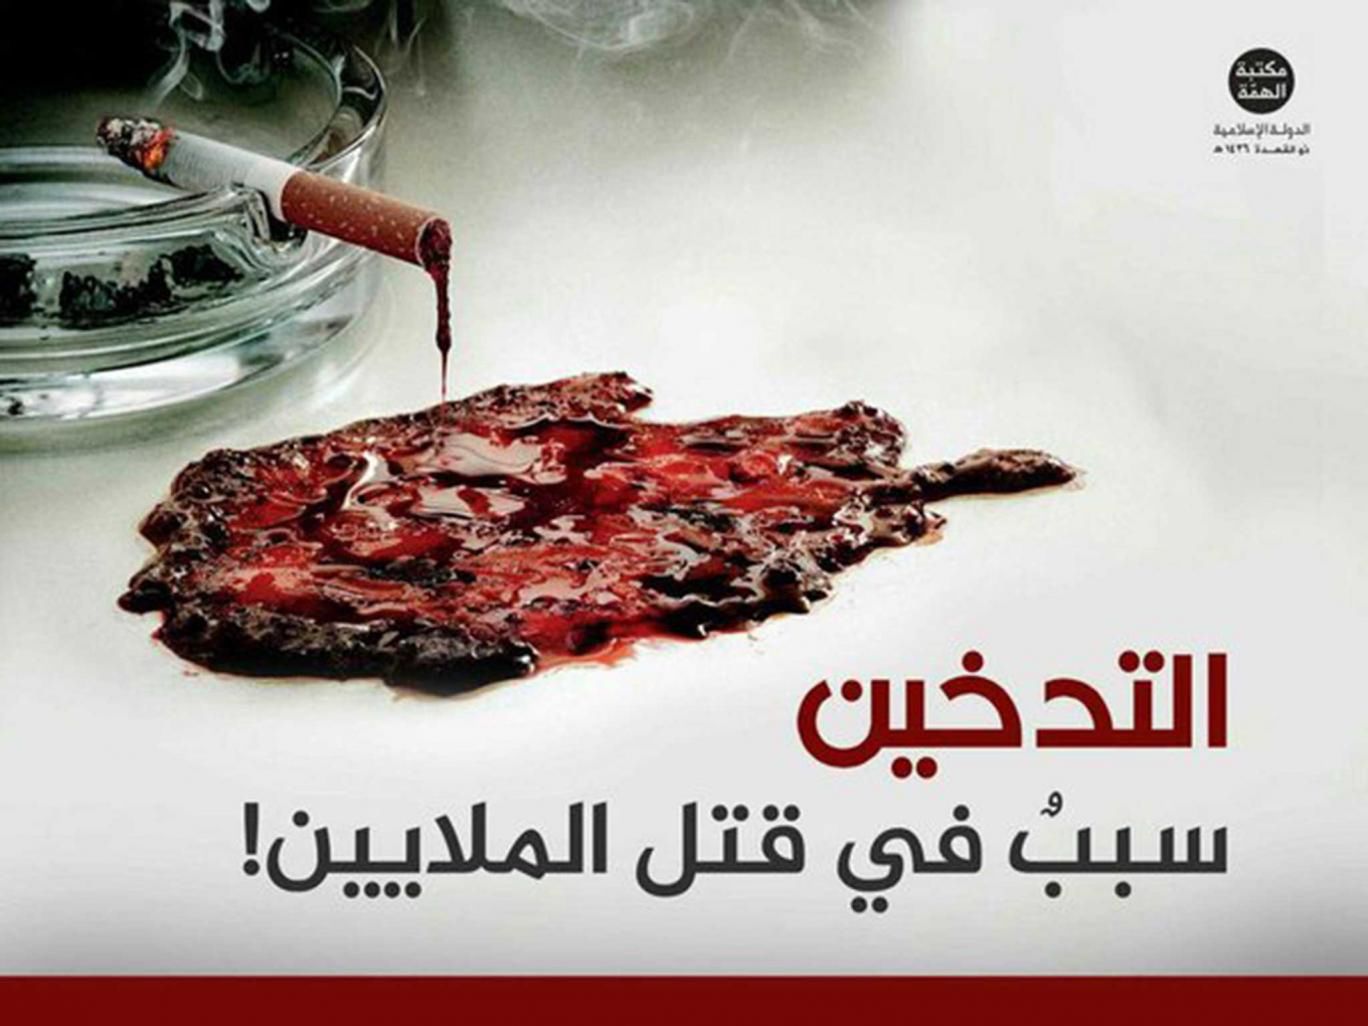 ISIS apeluje o rzucenie palenia... kradnąc plakat angielskiego ministerstwa zdrowia!